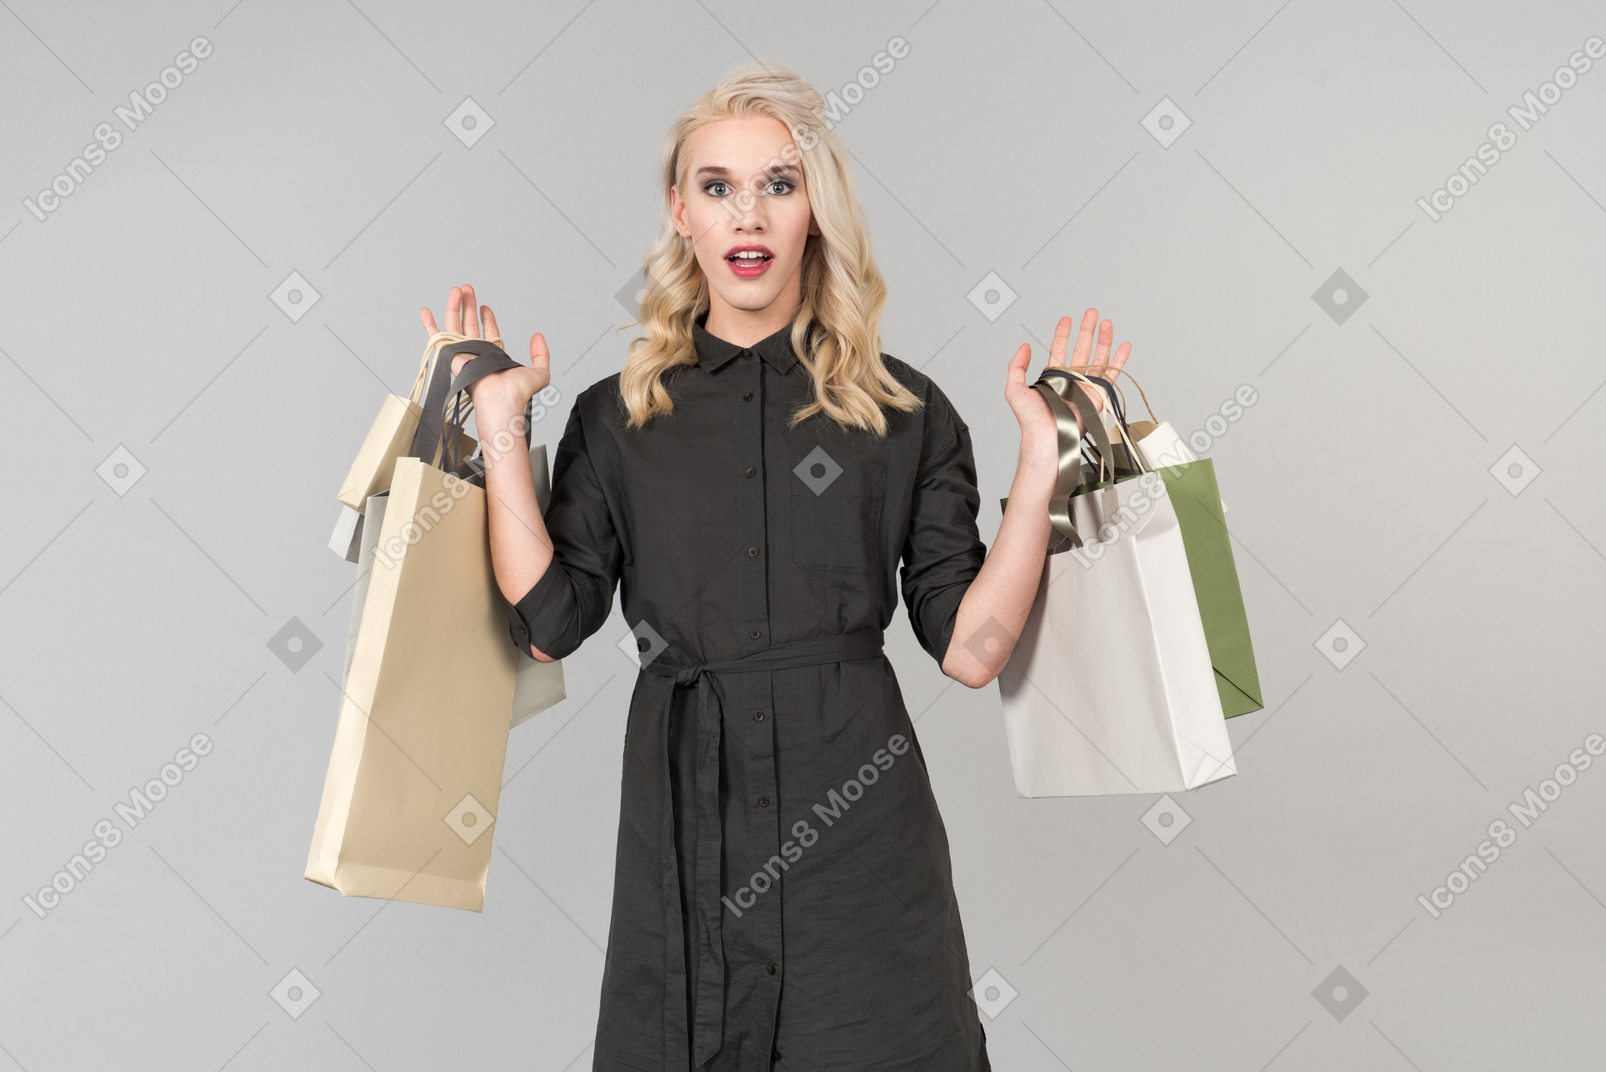 Una giovane bellissima persona dai capelli biondi in un abito nero con un mazzo di borse della spesa in entrambe le mani